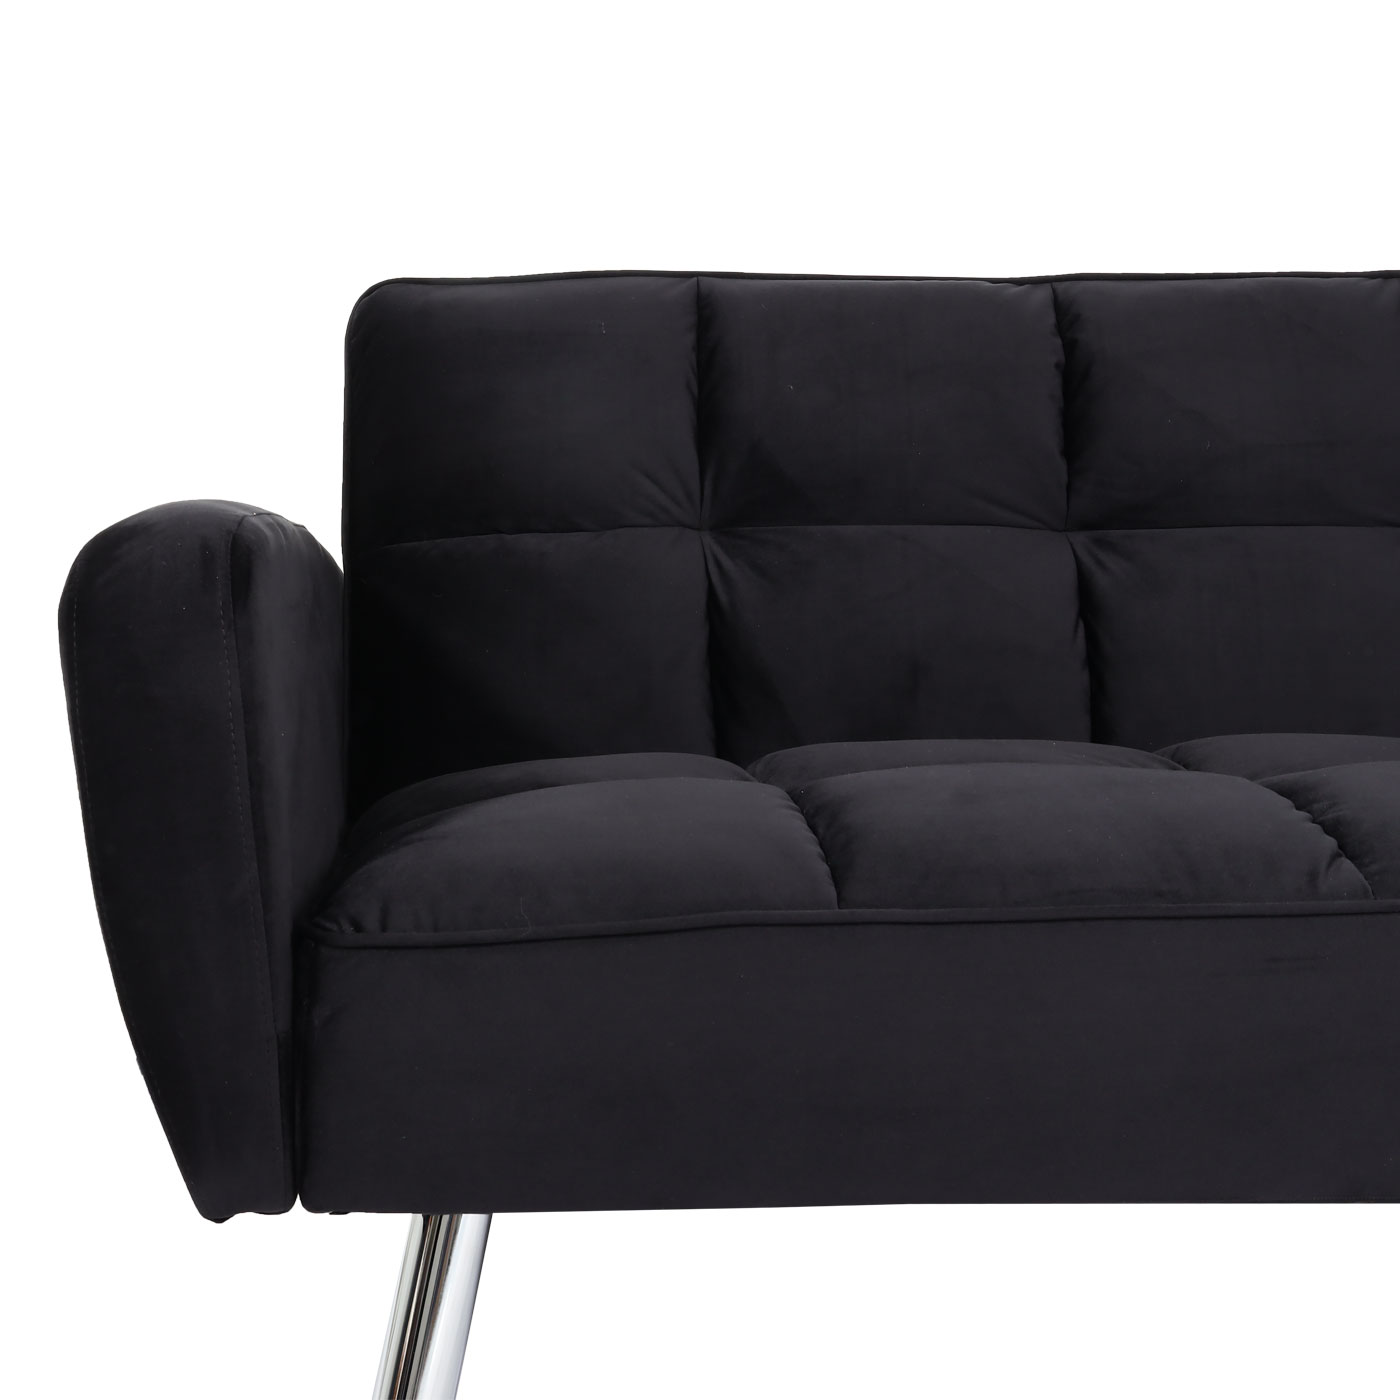 Sofa HWC-K19, Detailbild Polster